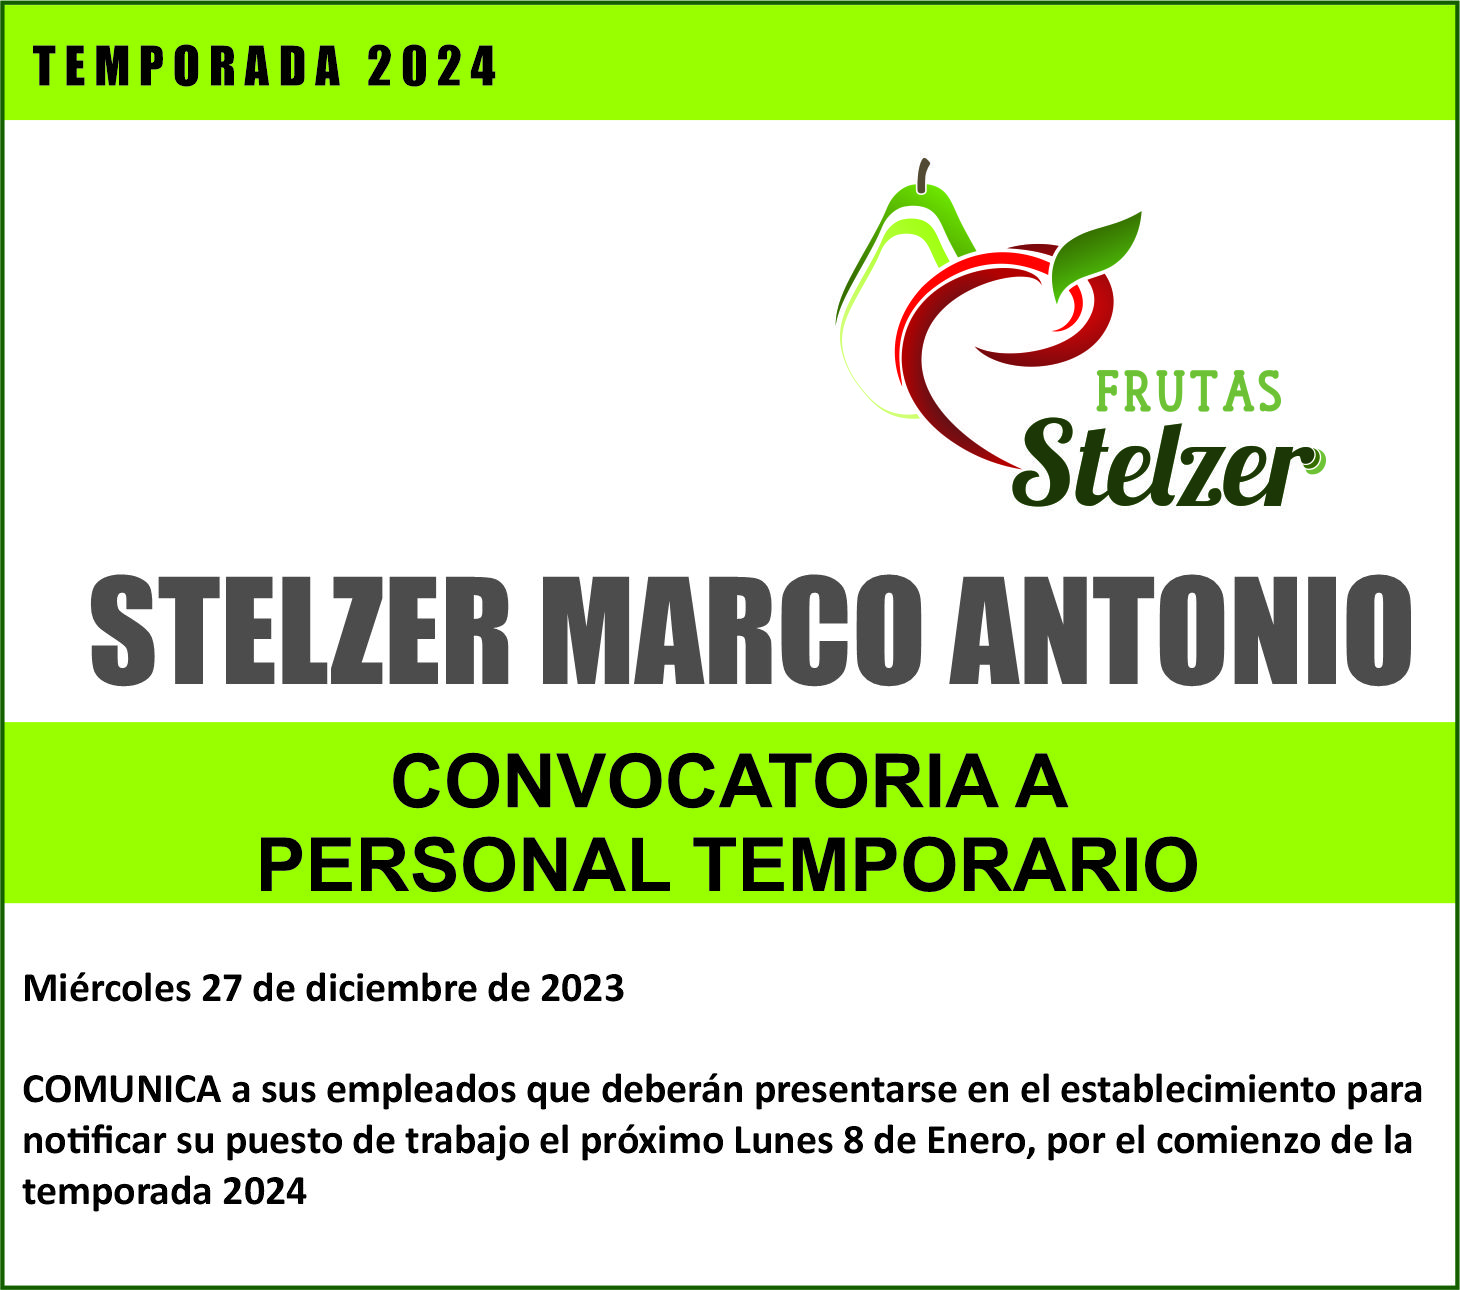 MARCO ANTONIO STELZER convoca a su personal temporario para dar inicio a la temporada 2024